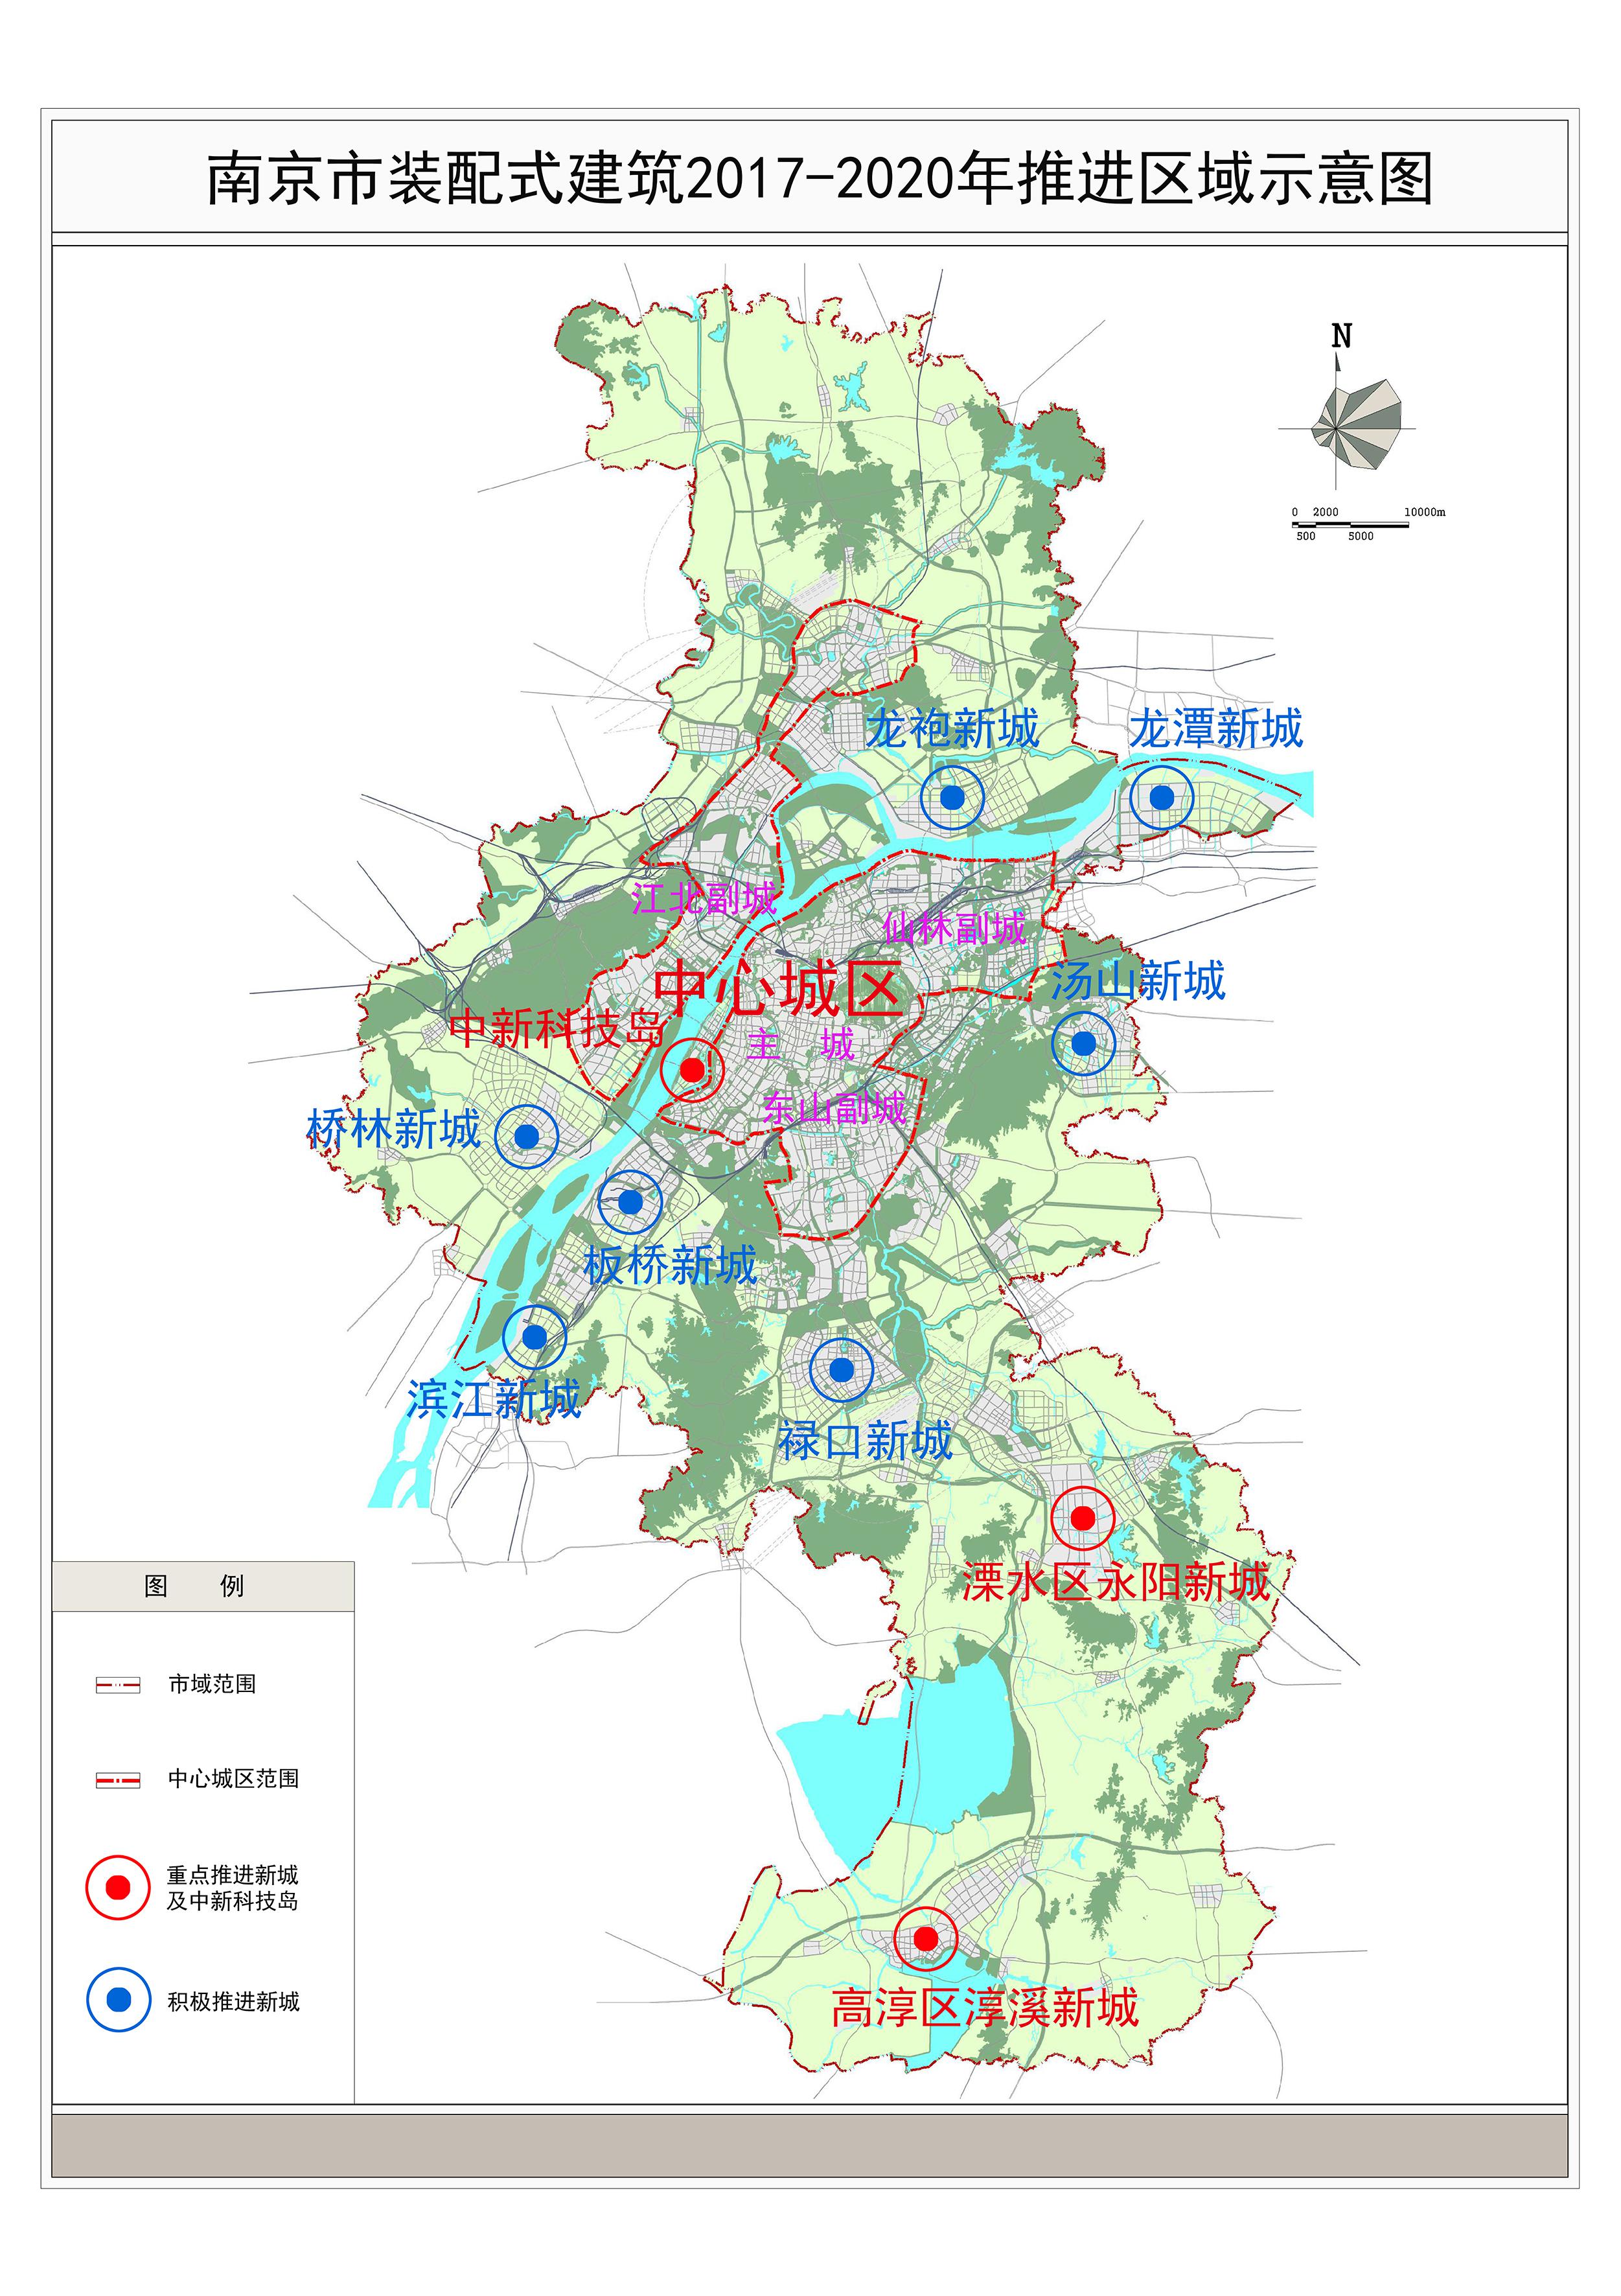 南京市装配式建筑2017—2020年推进区域示意图.jpg